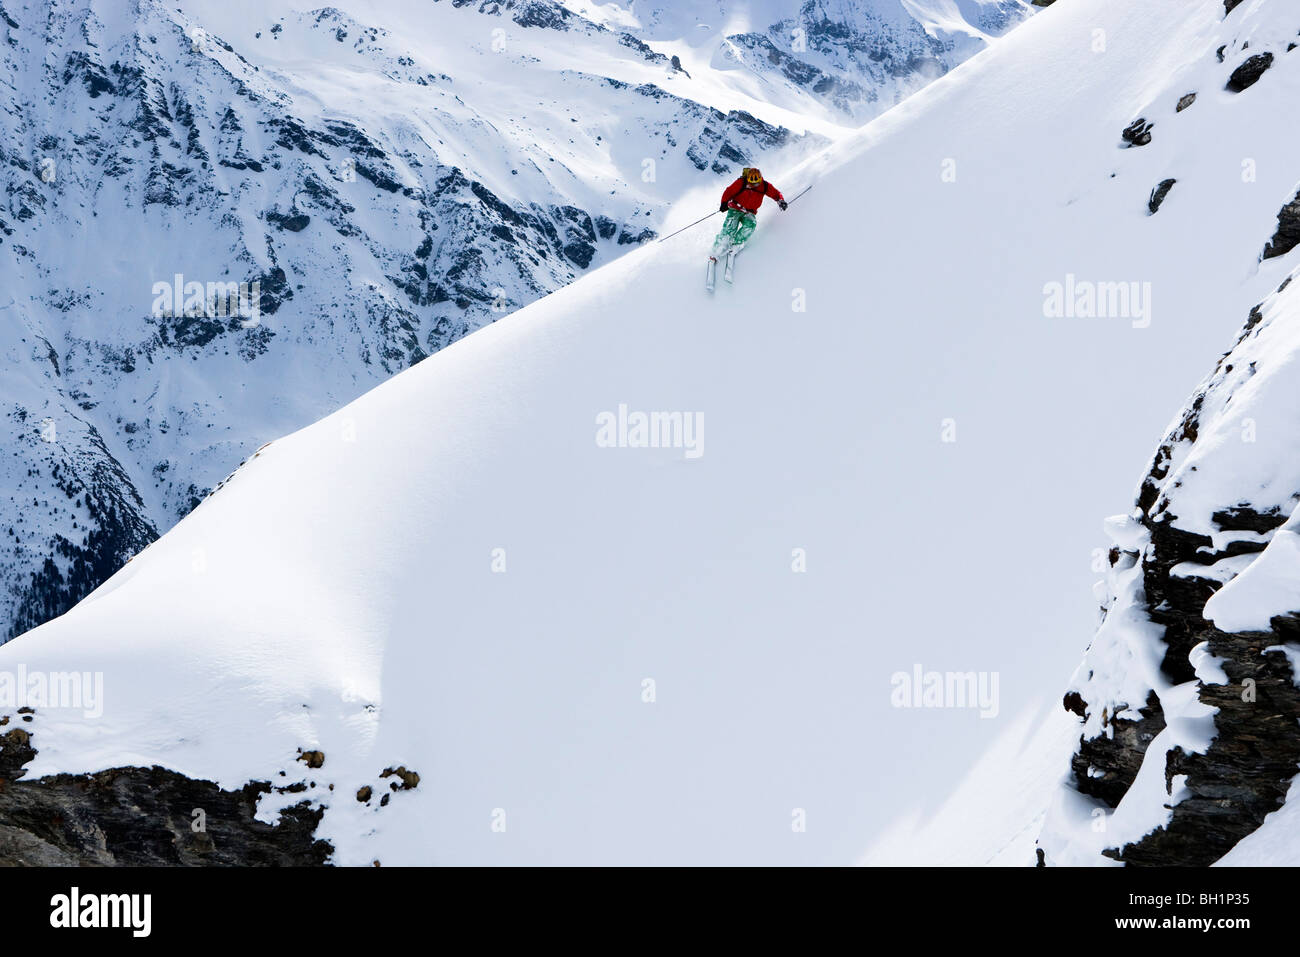 Domaine de Freeride, Zinal, ein junger Mann im Pulverschnee Skifahren Schnee, Kanton Wallis, Wallis, Schweiz, Alpen, Herr Stockfoto